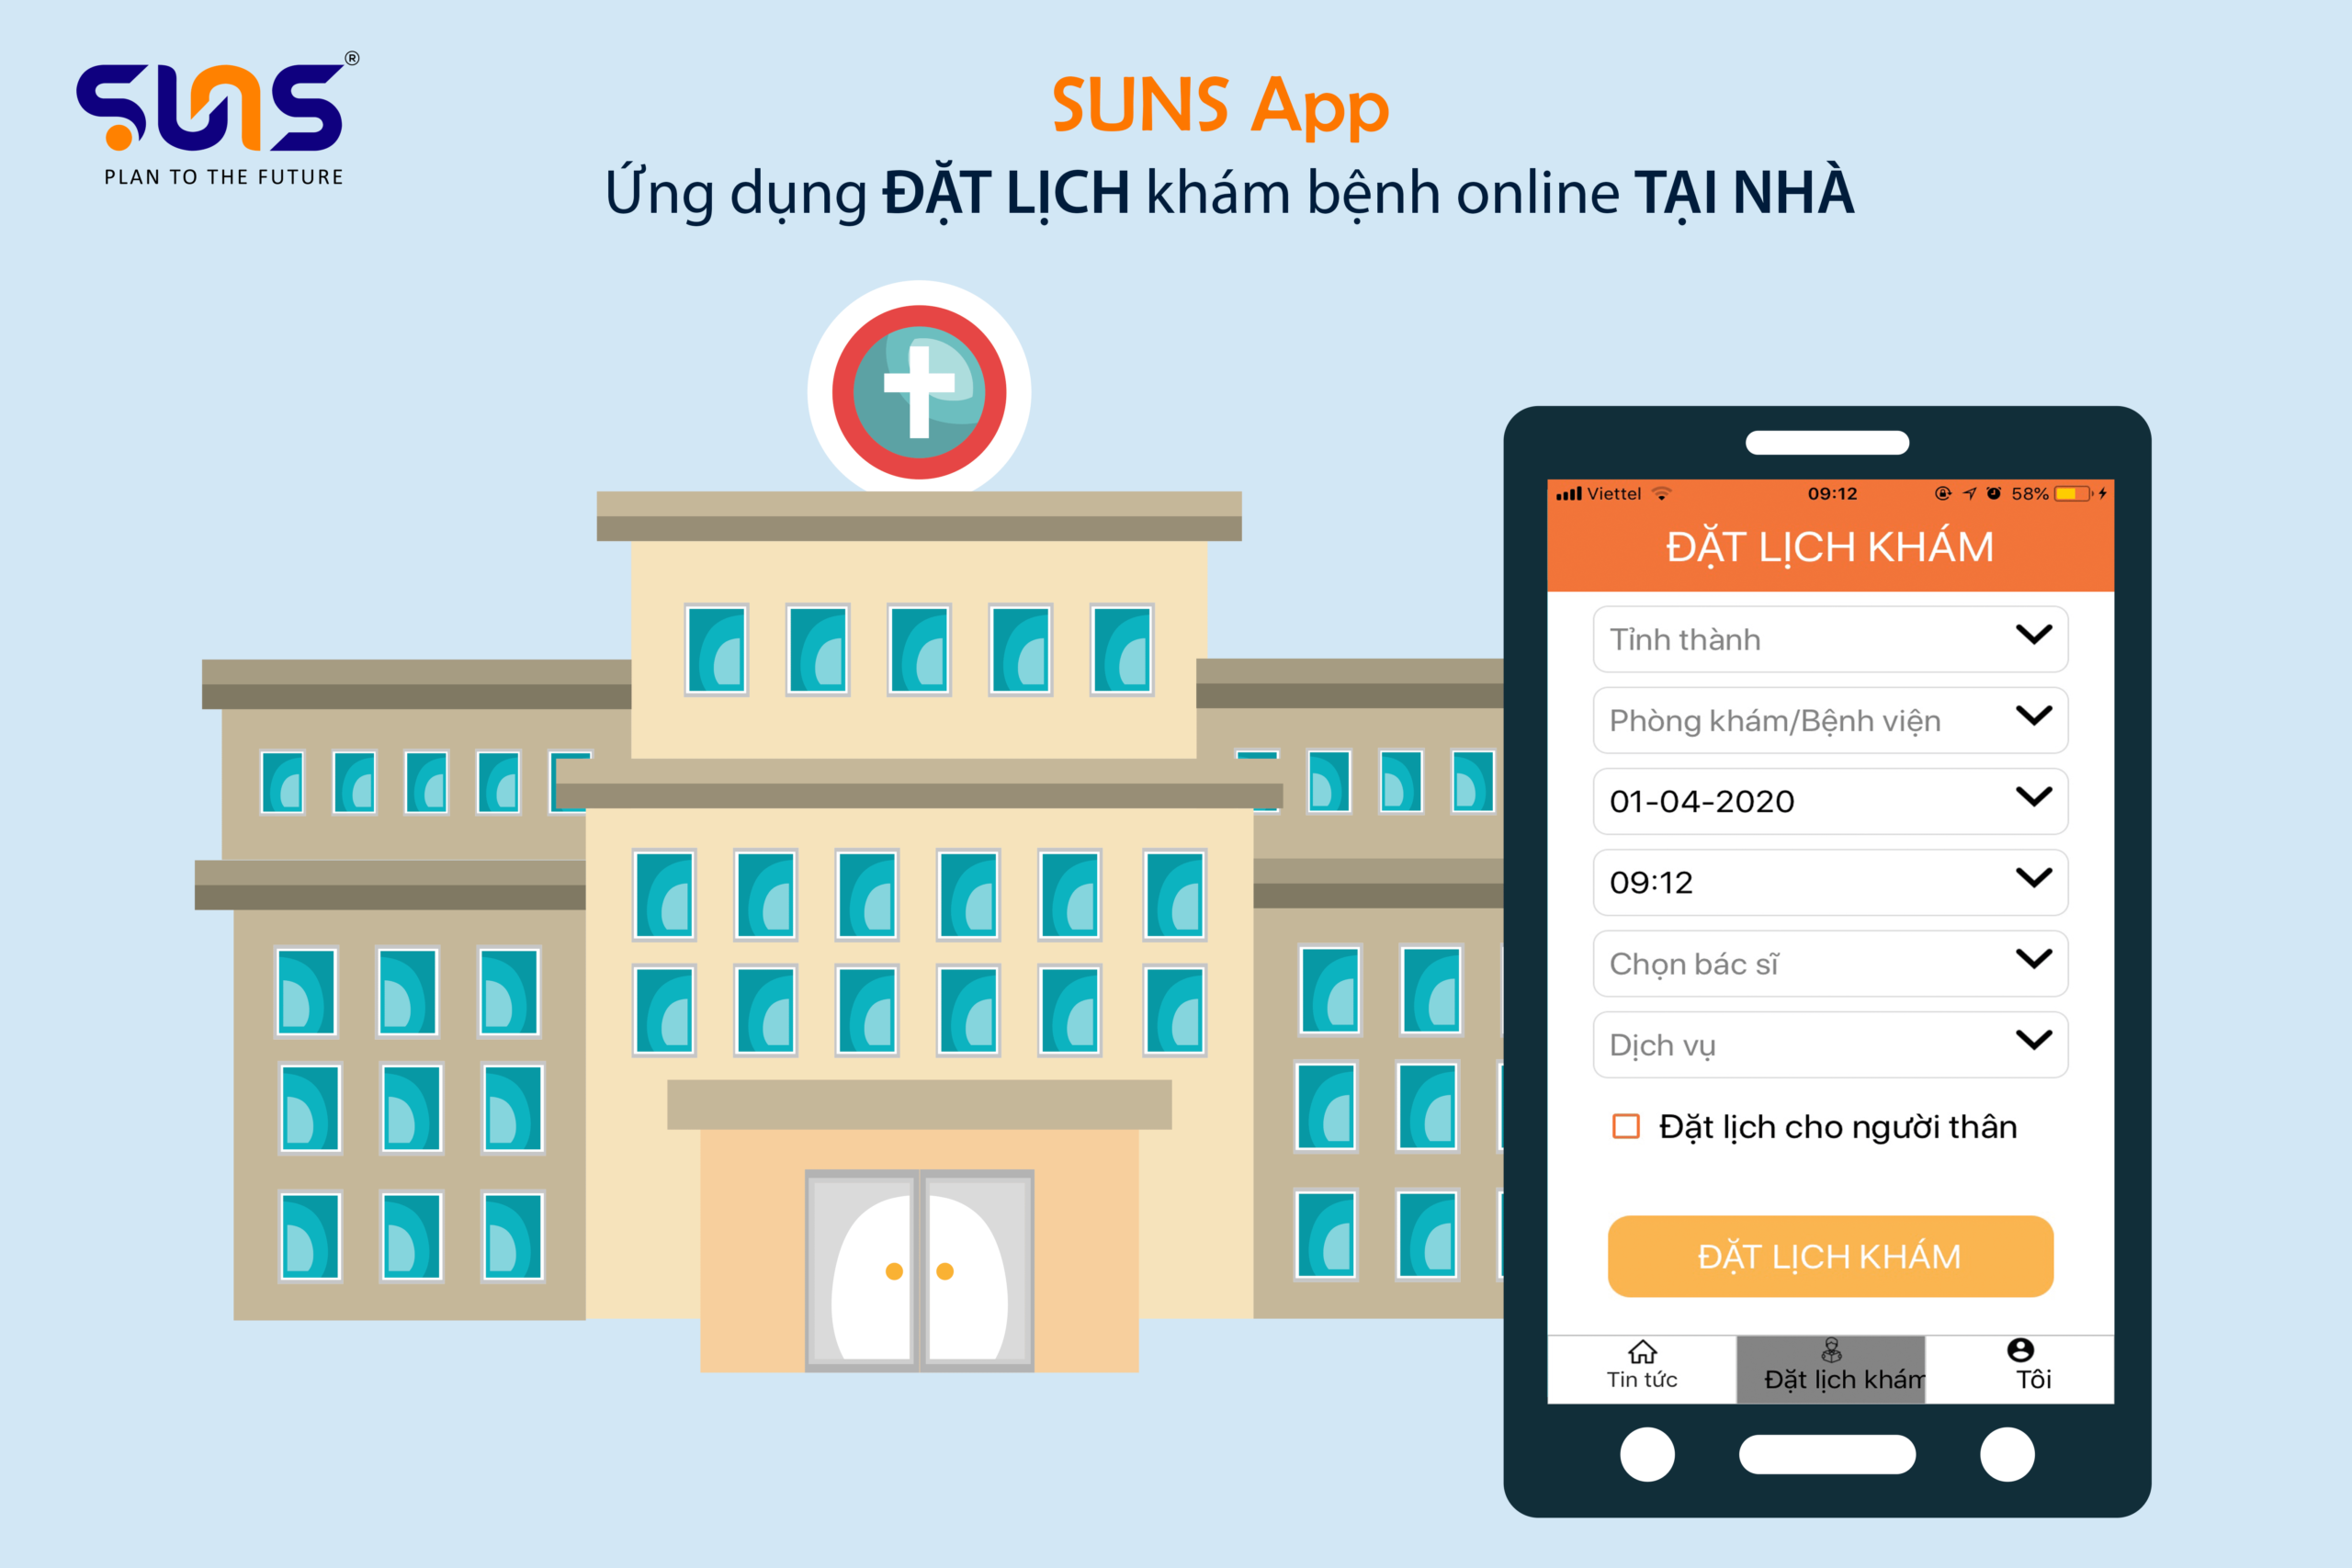 SUNS App - Ứng dụng đặt lịch khám bệnh online tại nhà